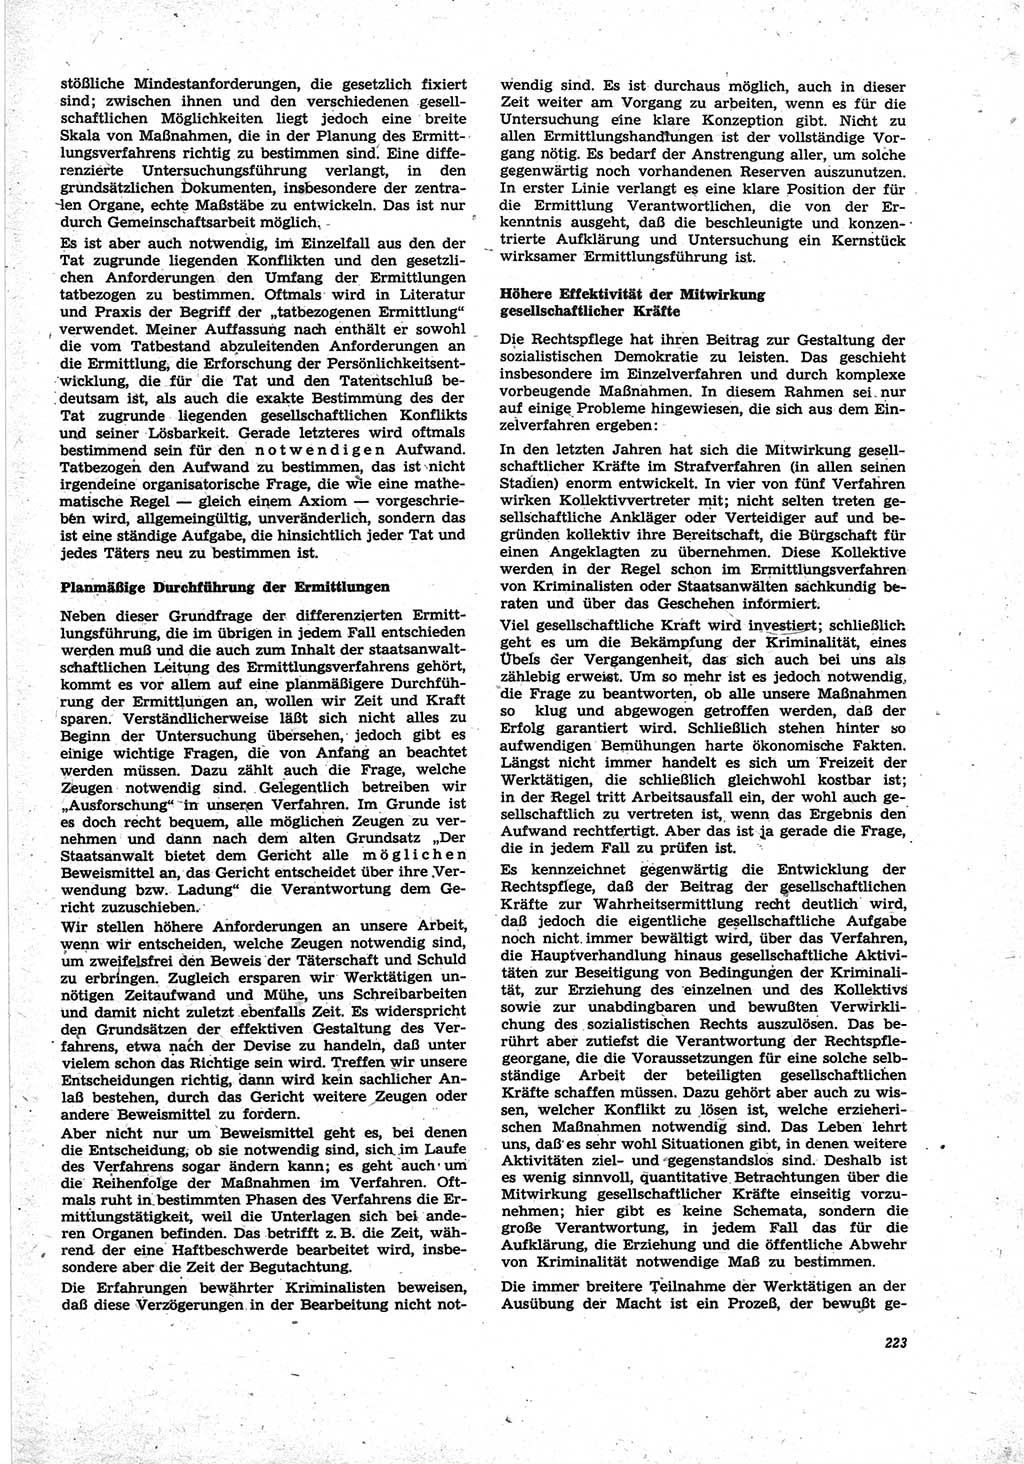 Neue Justiz (NJ), Zeitschrift für Recht und Rechtswissenschaft [Deutsche Demokratische Republik (DDR)], 25. Jahrgang 1971, Seite 223 (NJ DDR 1971, S. 223)